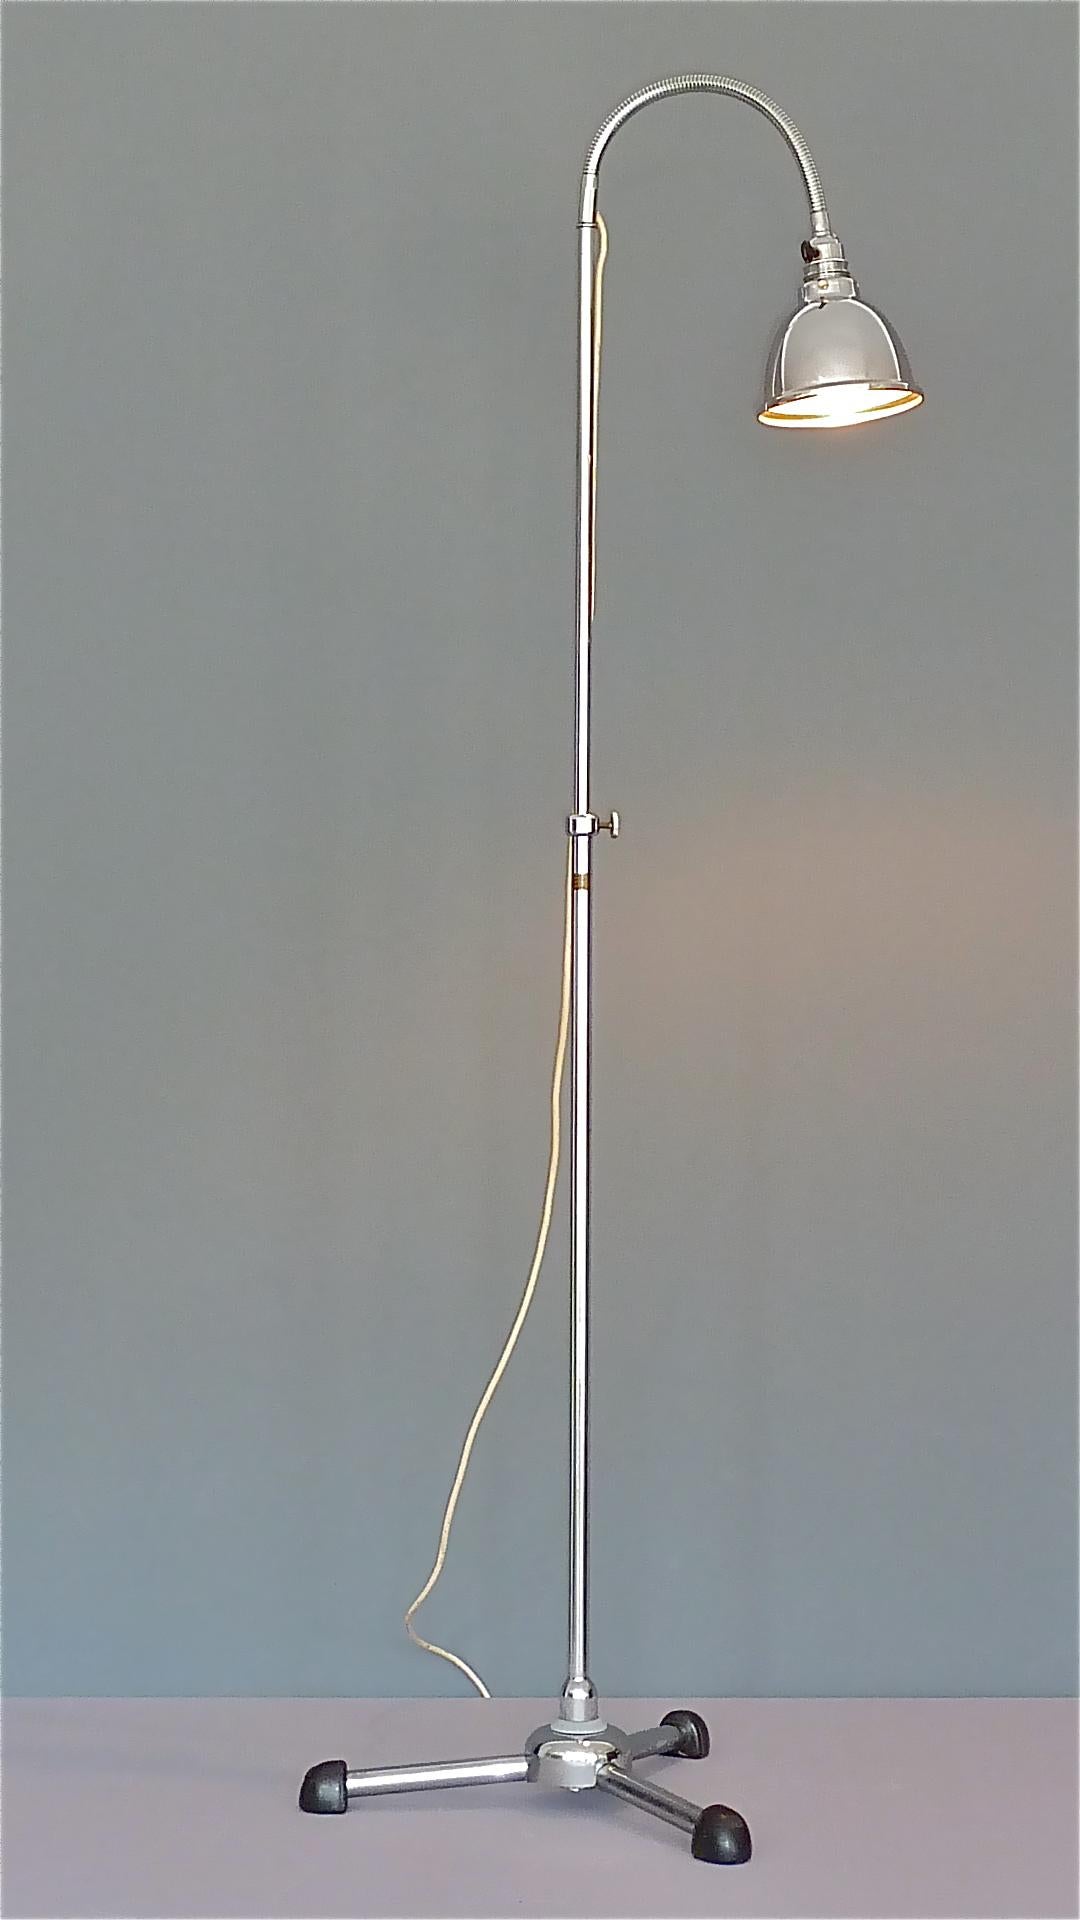 Christian Dell Bauhaus Chrome Metal Floor Standard Lamp 1930s Gooseneck Art Deco For Sale 8